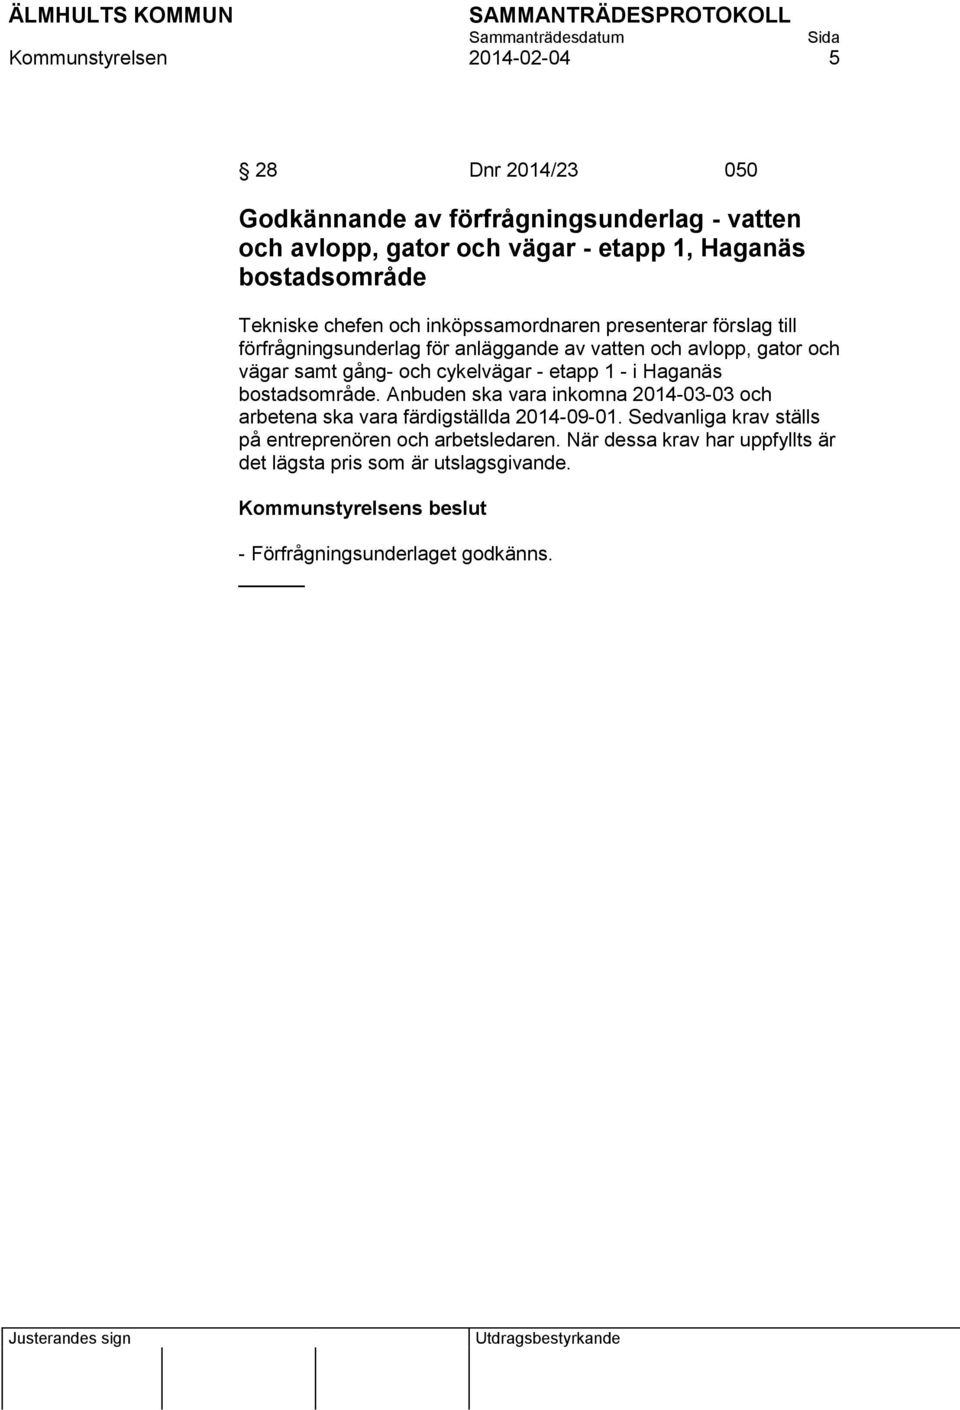 cykelvägar - etapp 1 - i Haganäs bostadsområde. Anbuden ska vara inkomna 2014-03-03 och arbetena ska vara färdigställda 2014-09-01.